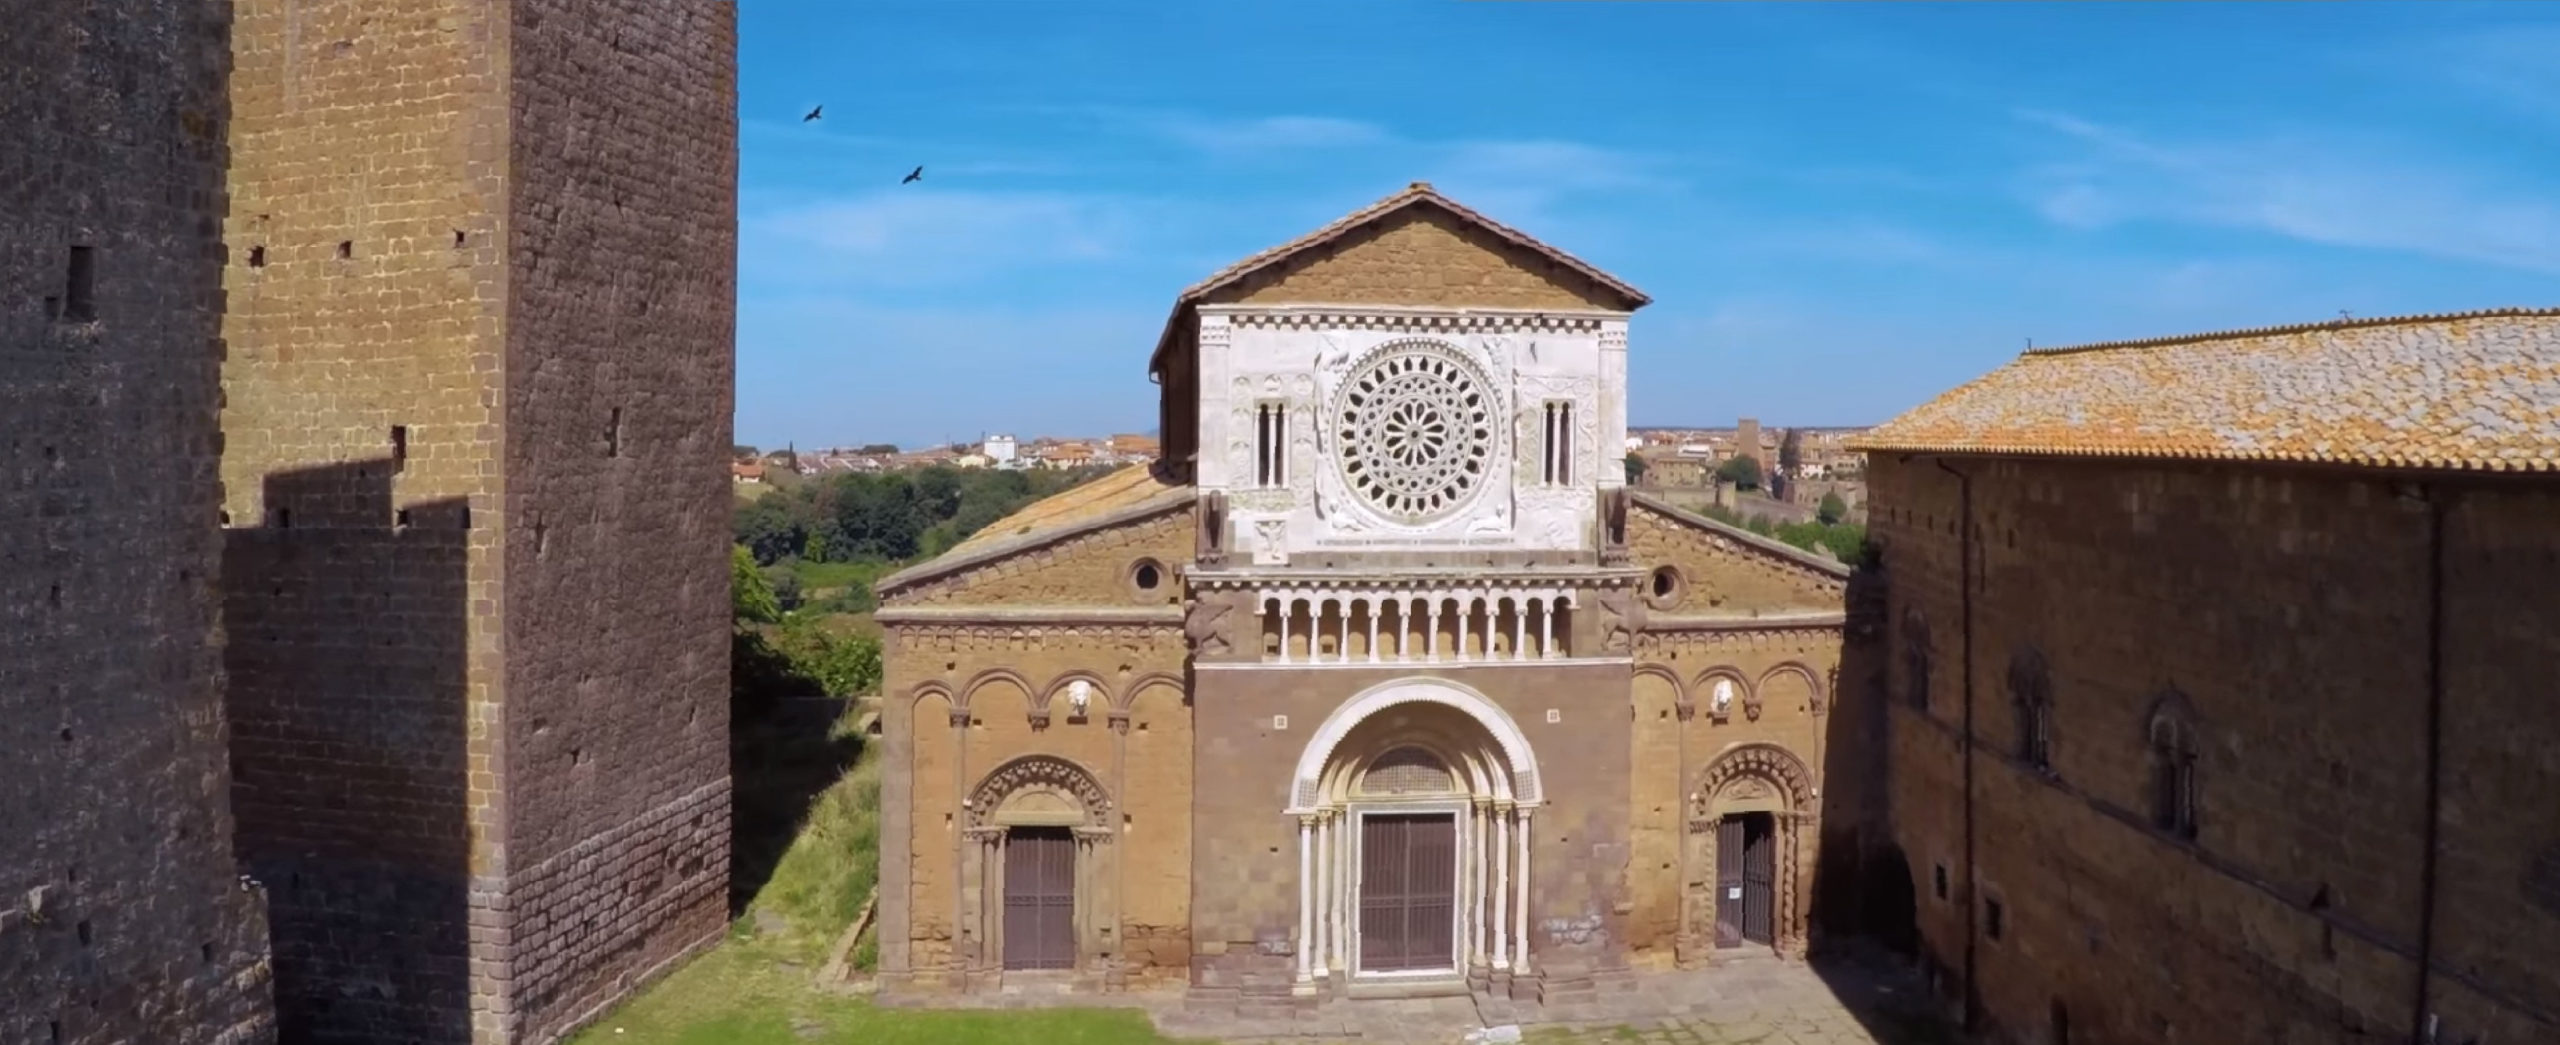 Tuscania - Facciata della Basilica di San Pietro e torrioni